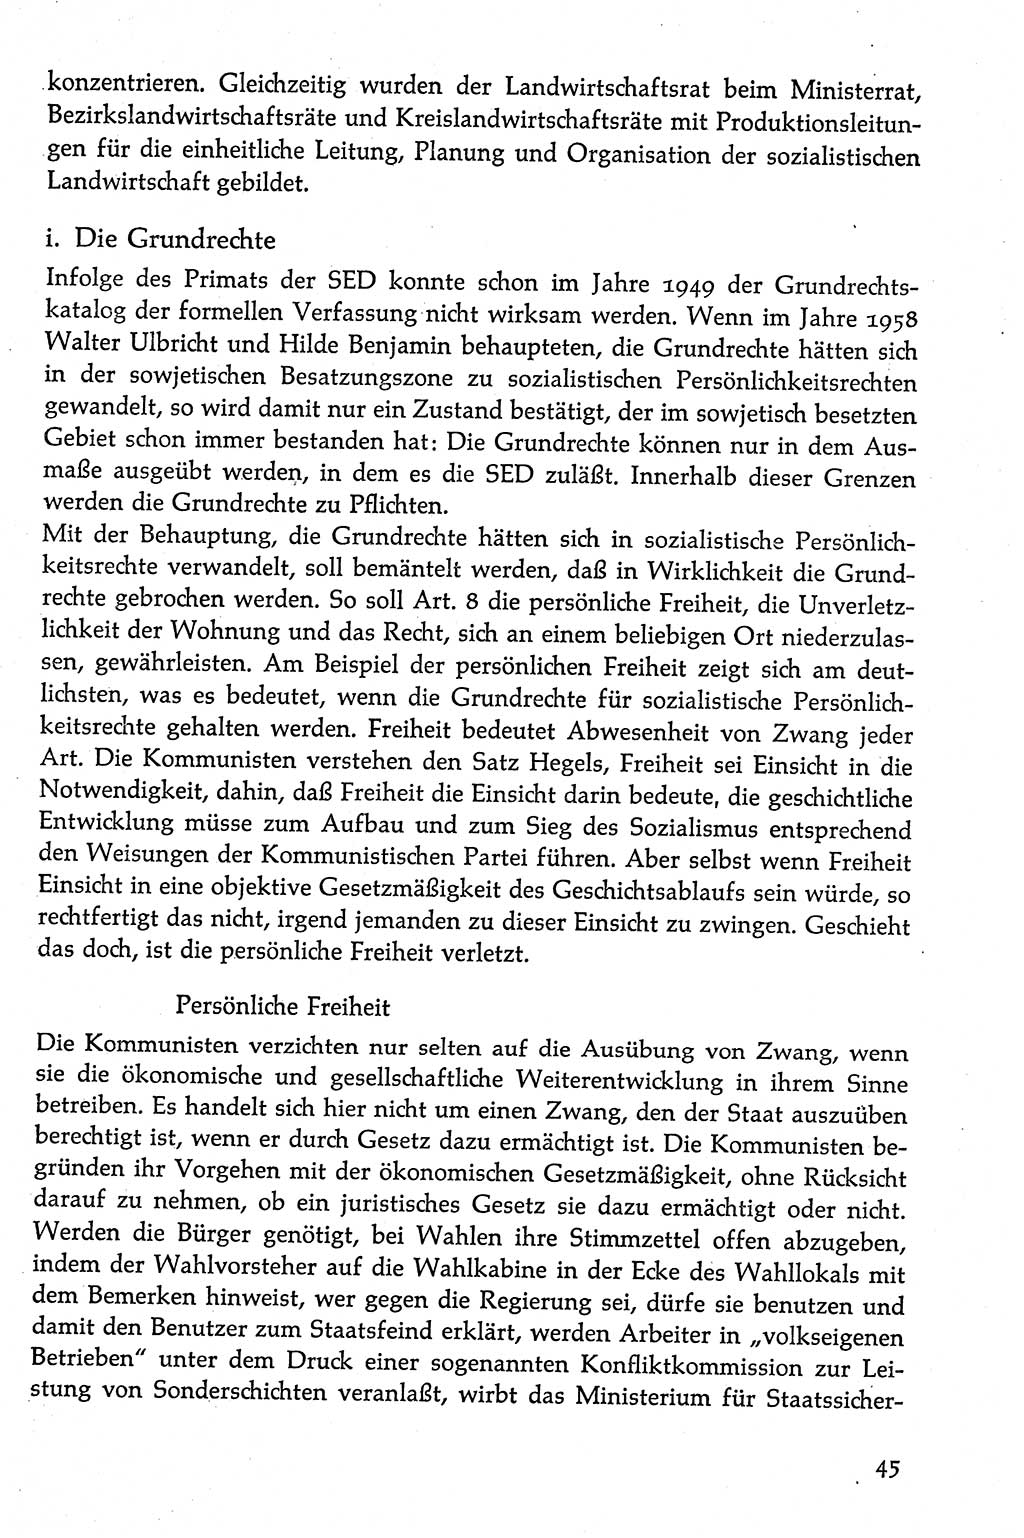 Volksdemokratische Ordnung in Mitteldeutschland [Deutsche Demokratische Republik (DDR)], Texte zur verfassungsrechtlichen Situation 1963, Seite 45 (Volksdem. Ordn. Md. DDR 1963, S. 45)